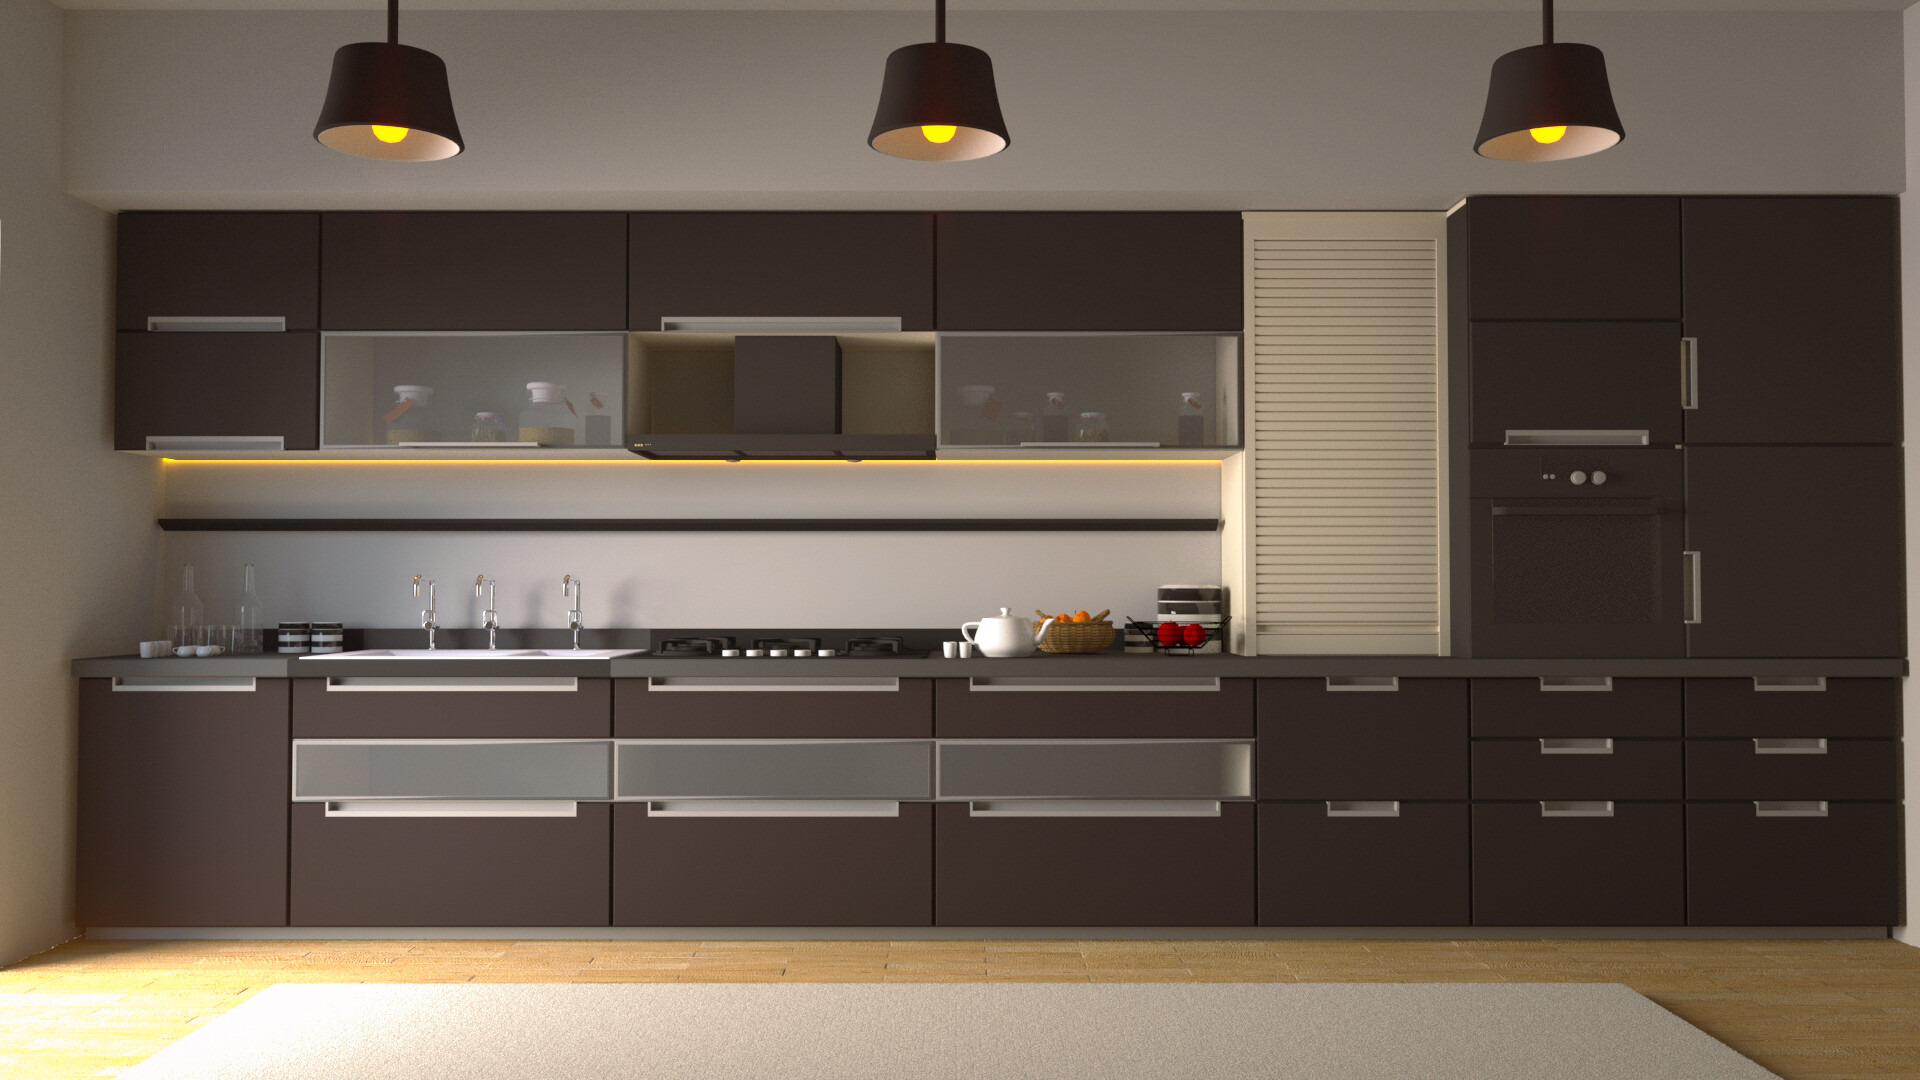 ArtStation - 3D Kitchen Interior design